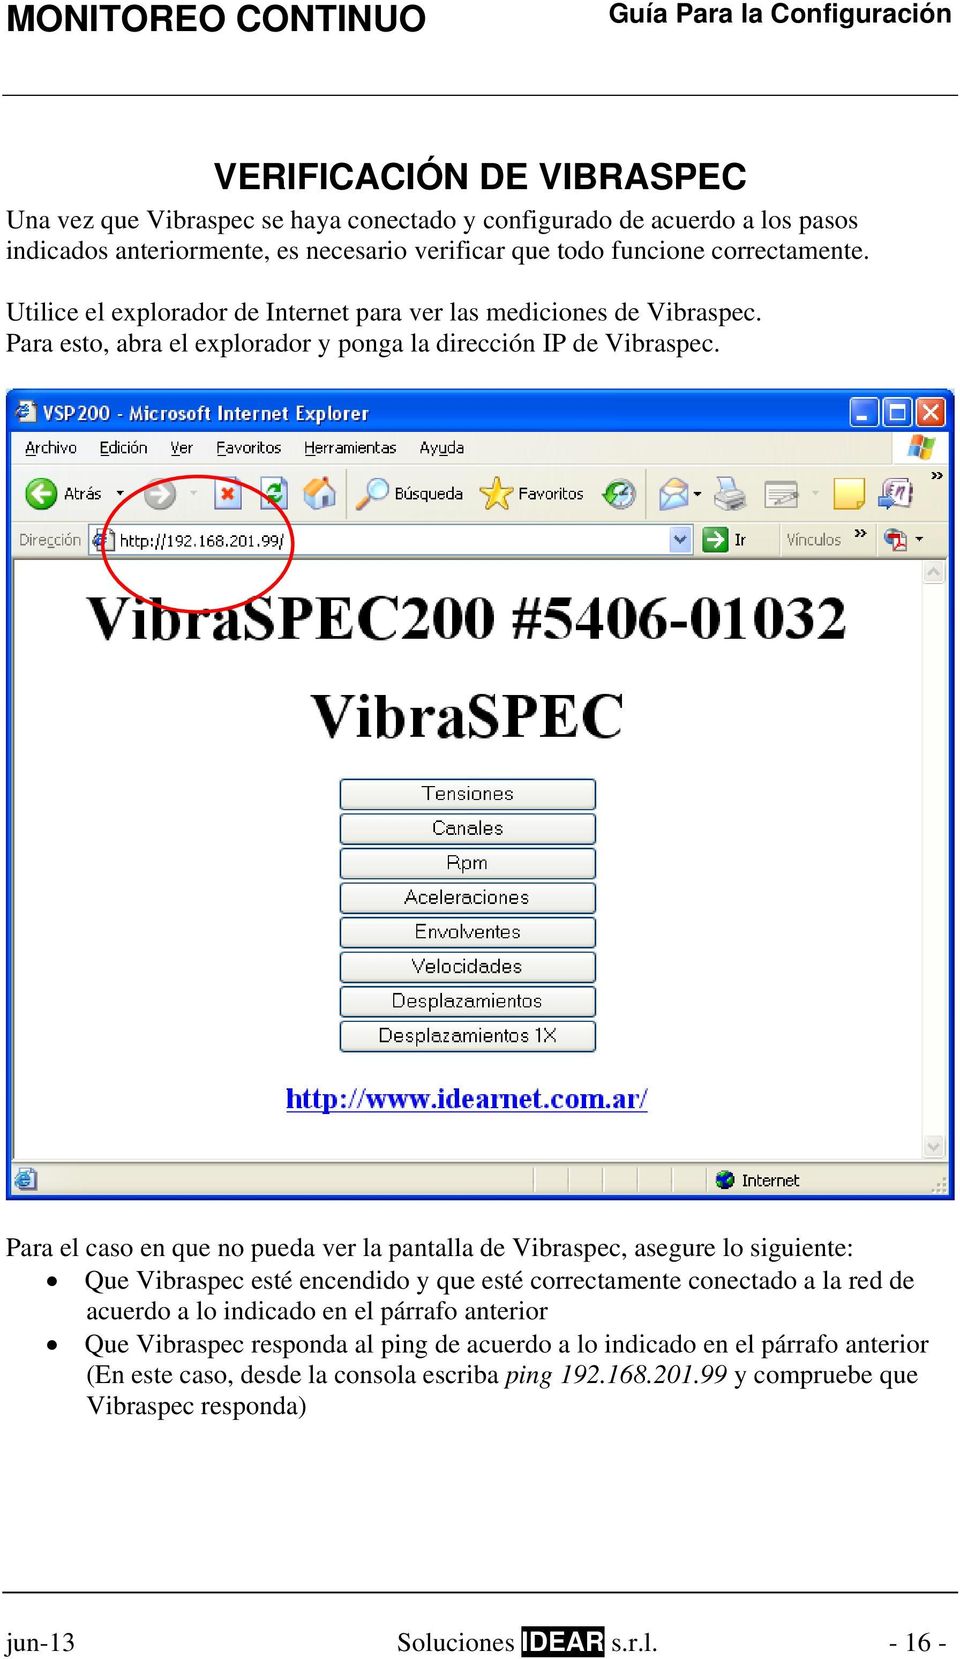 Para el caso en que no pueda ver la pantalla de Vibraspec, asegure lo siguiente: Que Vibraspec esté encendido y que esté correctamente conectado a la red de acuerdo a lo indicado en el